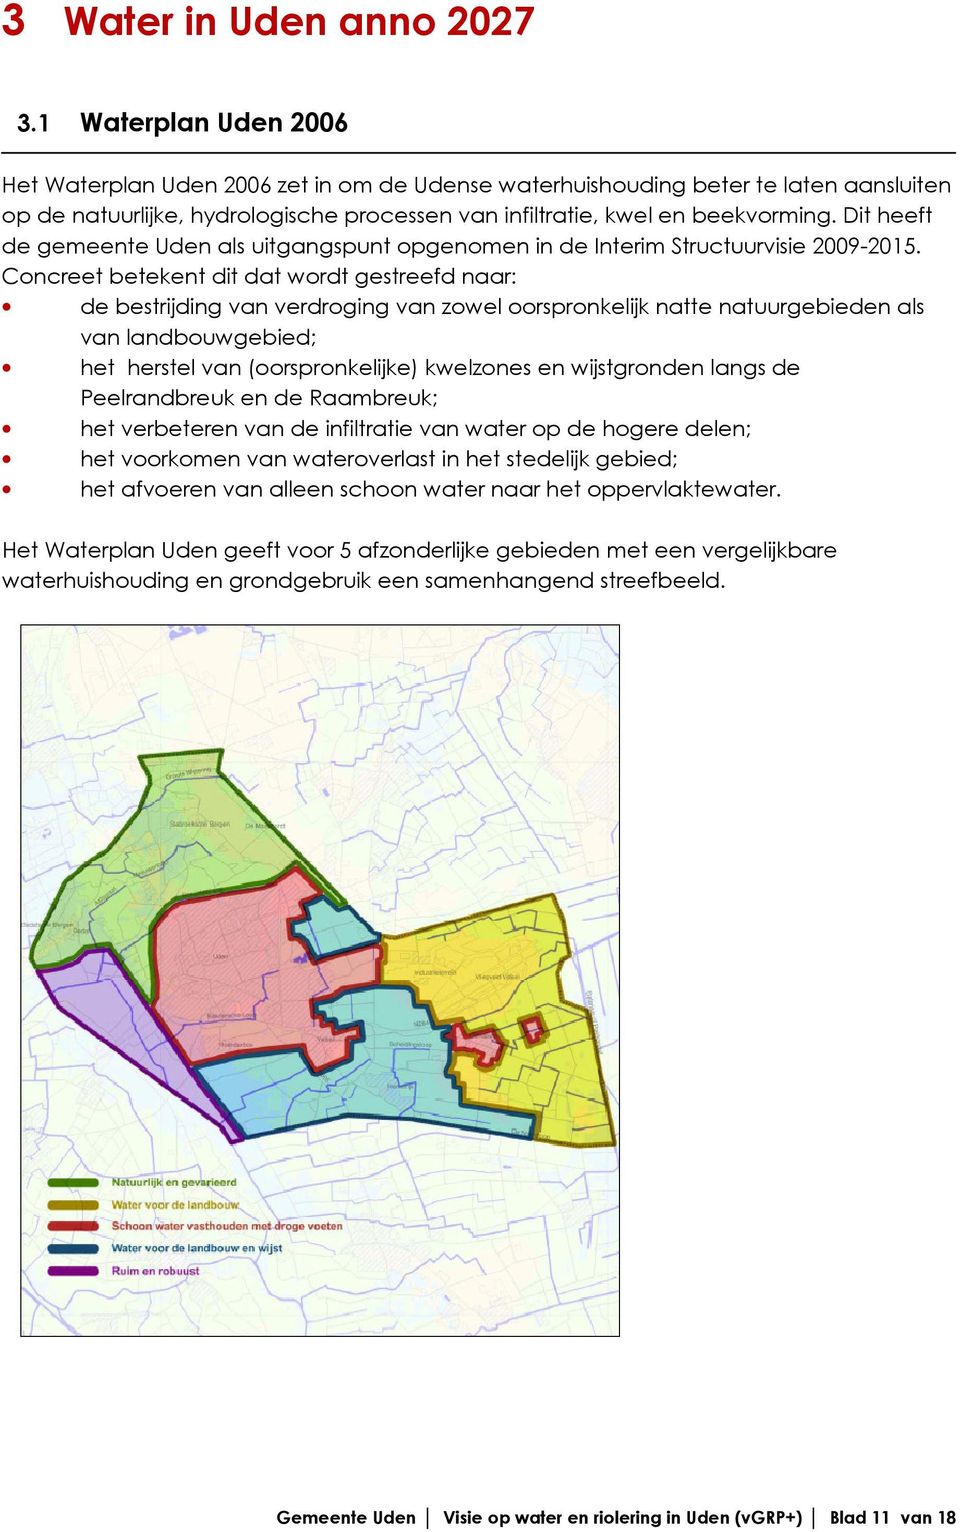 Dit heeft de gemeente Uden als uitgangspunt opgenomen in de Interim Structuurvisie 2009-2015.